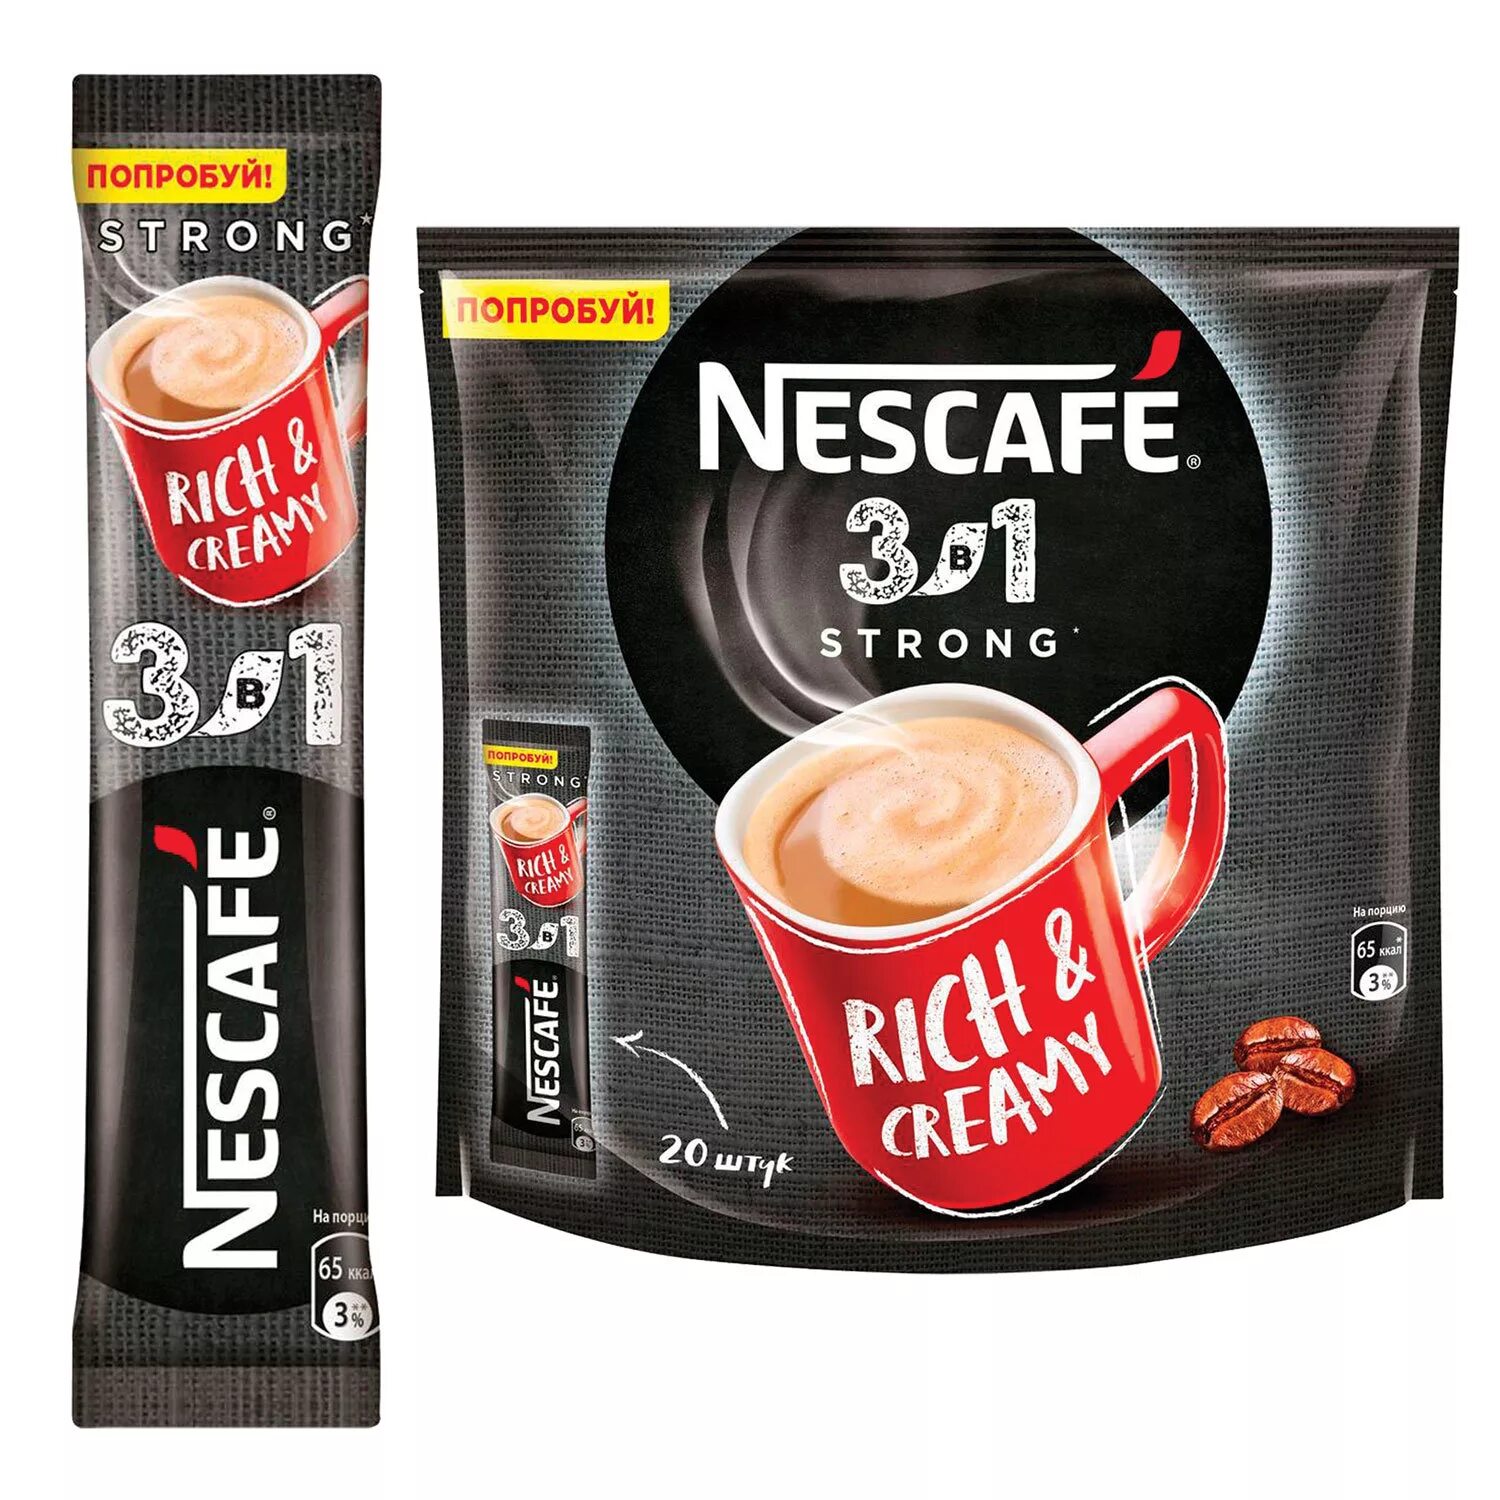 Кофе 3 в 1 в пакетиках купить. Nescafe 3в1 Rich & creamy. Кофе Нескафе 3 в 1 14,5г крепкий 20*20. Нескафе 3в1 кофе Классик 14,5гр упаковка стики. Кофе в пакетиках 3 в 1 Nescafe.